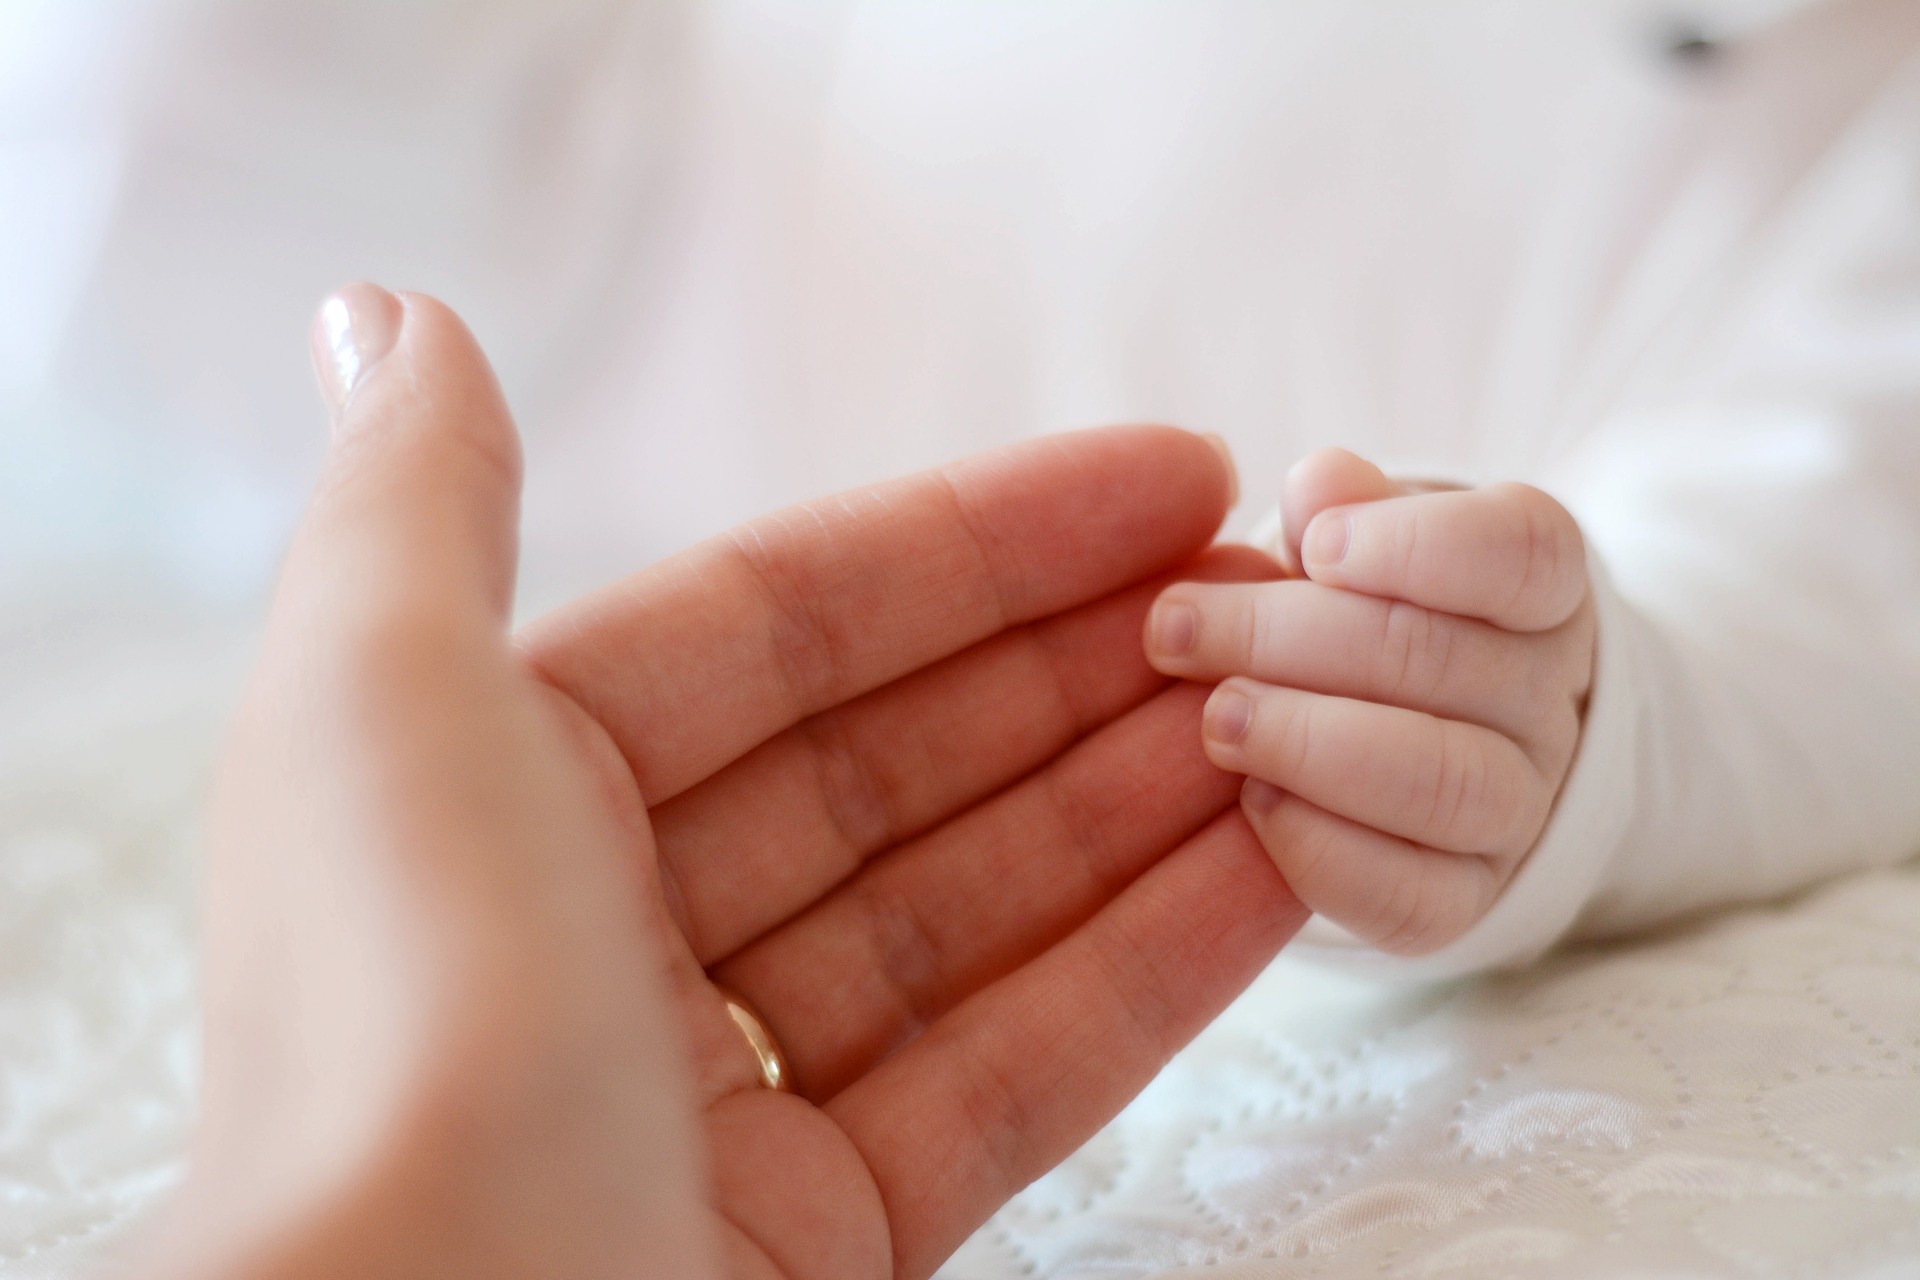 SUA: Prematur de Guinness Record, venit pe lume după numai cinci luni de sarcină!